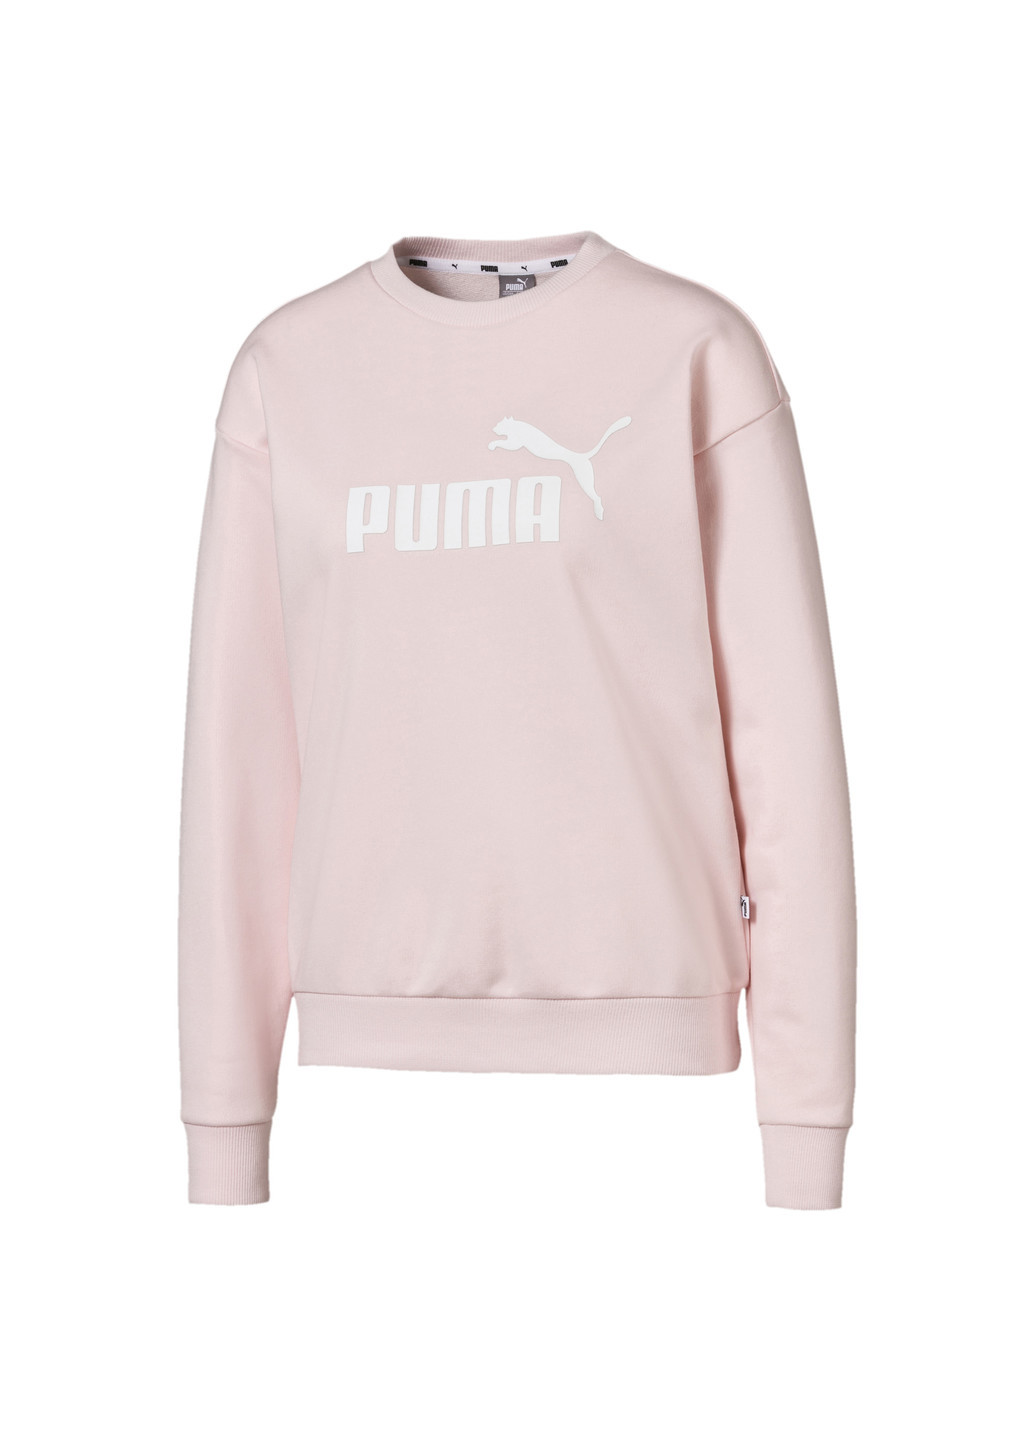 Толстовка Essentials Crew Sweat Puma однотонная розовая спортивная хлопок, полиэстер, эластан